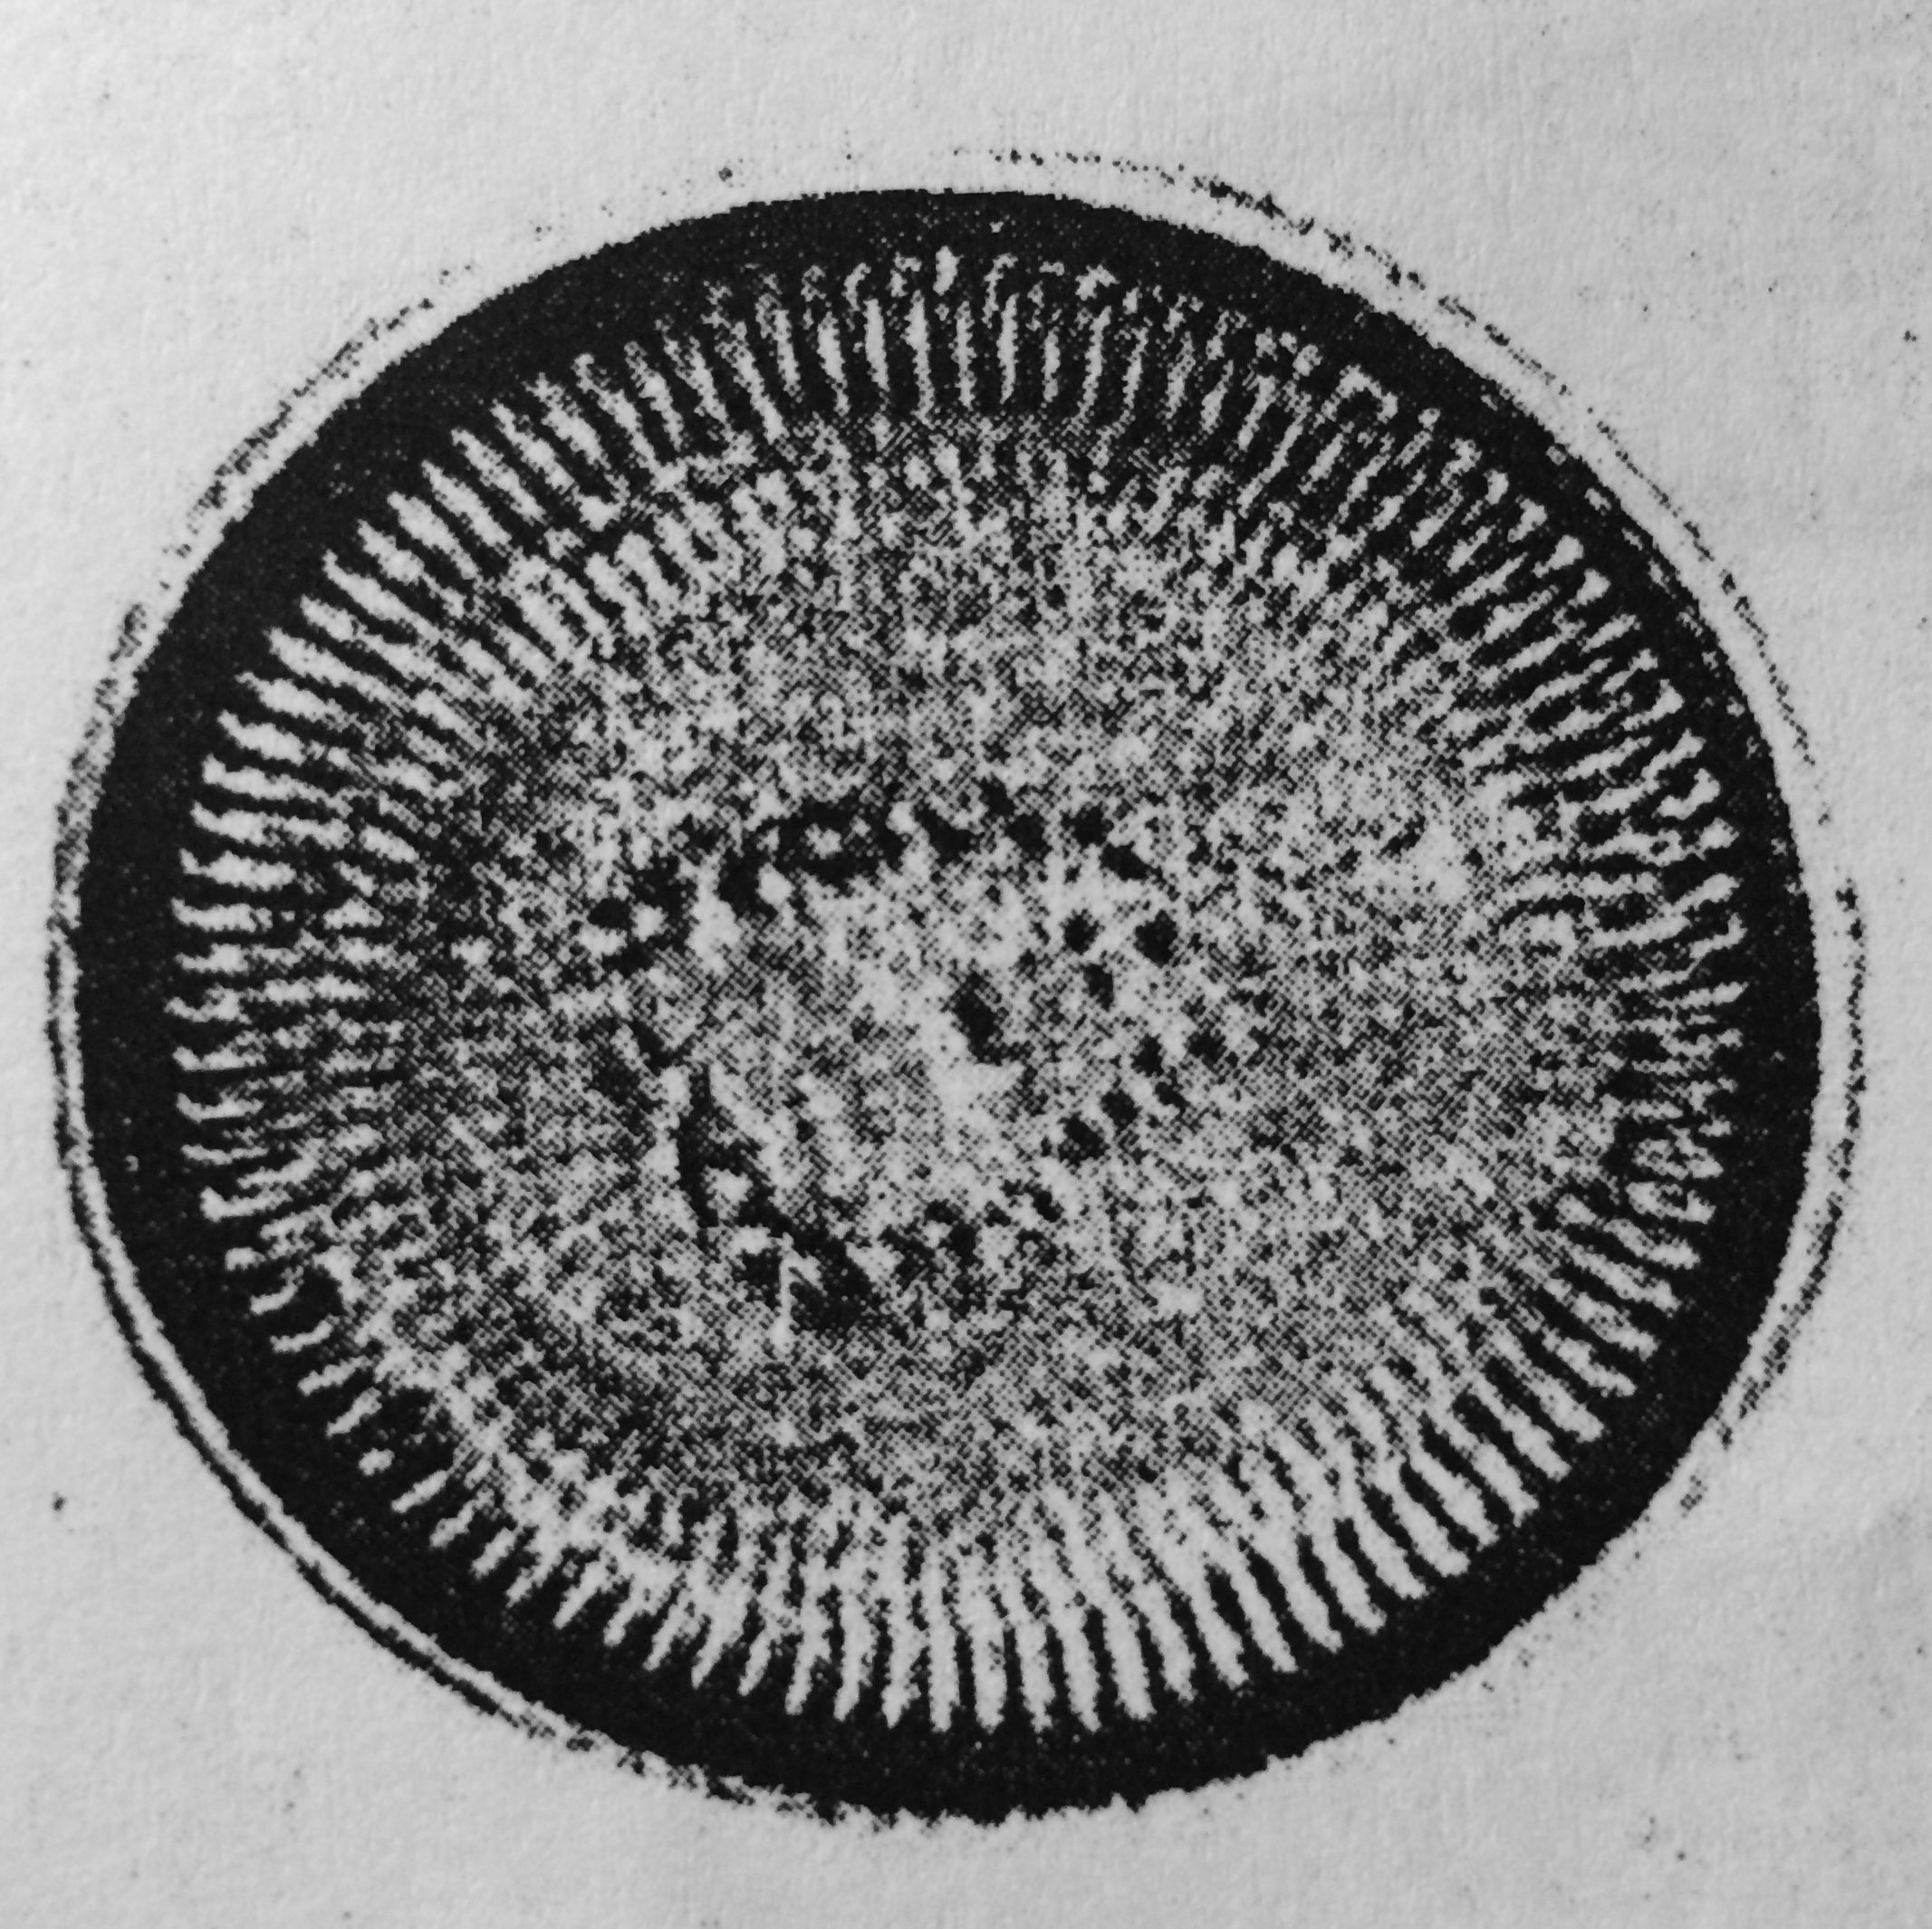 Cyclotella quillensis orig illus